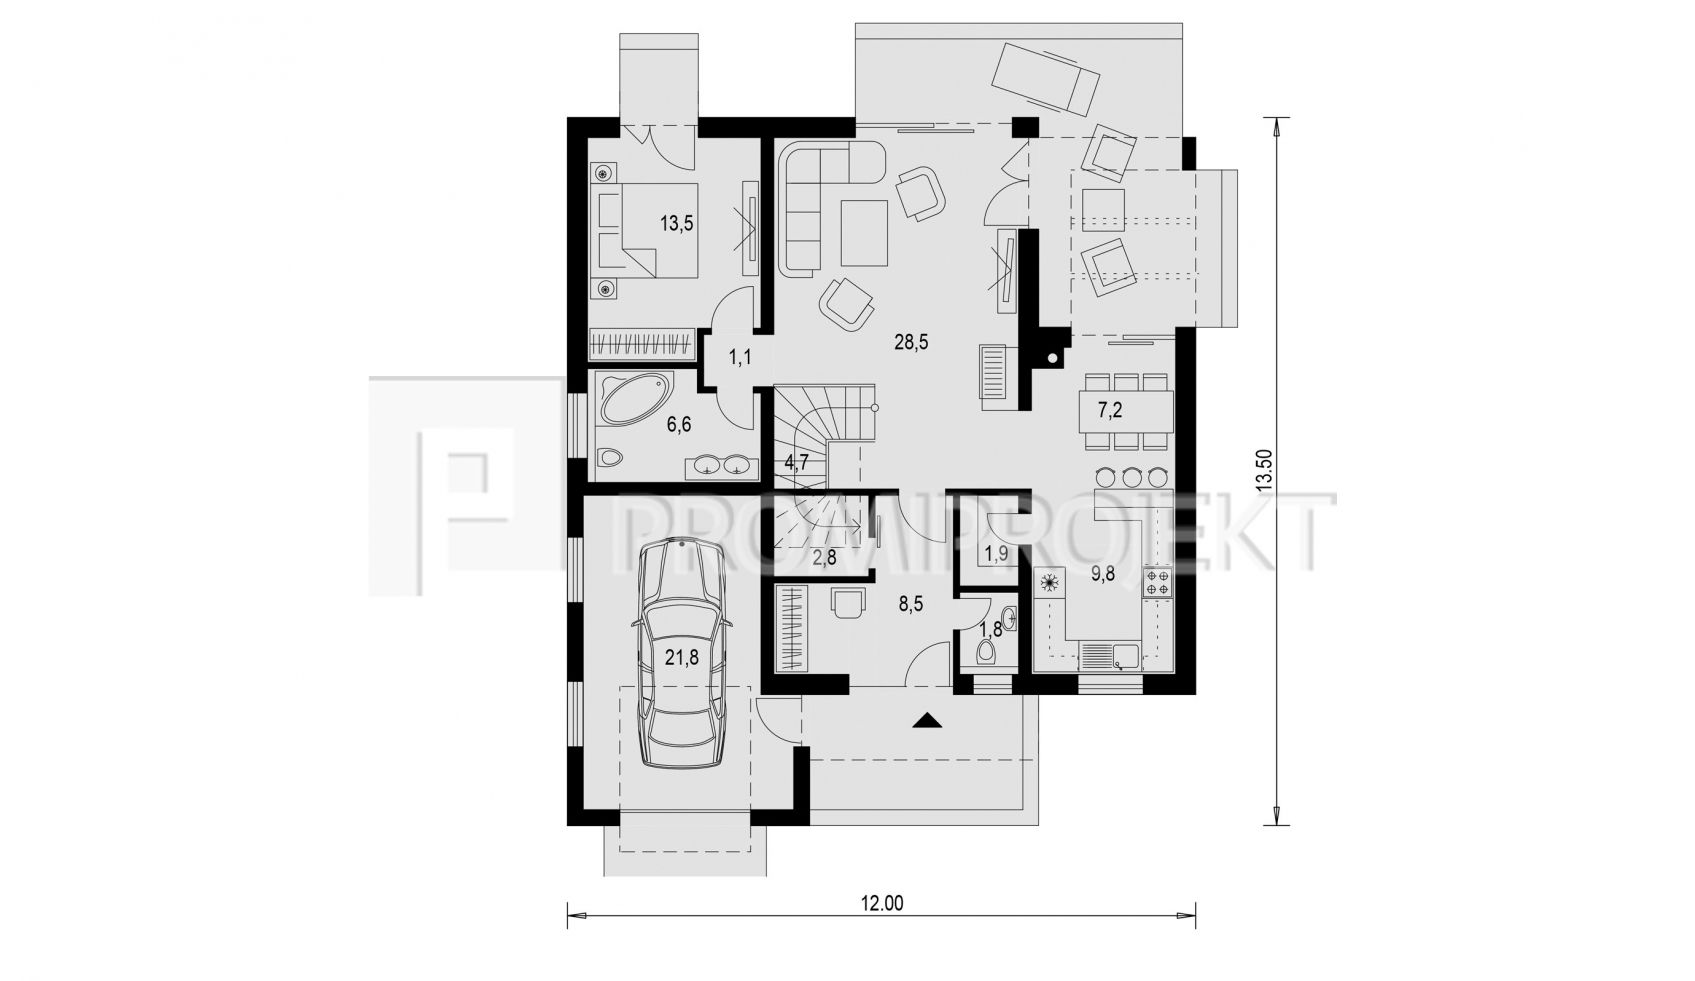 moderný nadčasový dvojgeneračný poschodový dom Linear 327, pôdorys prízemia 1, Promi